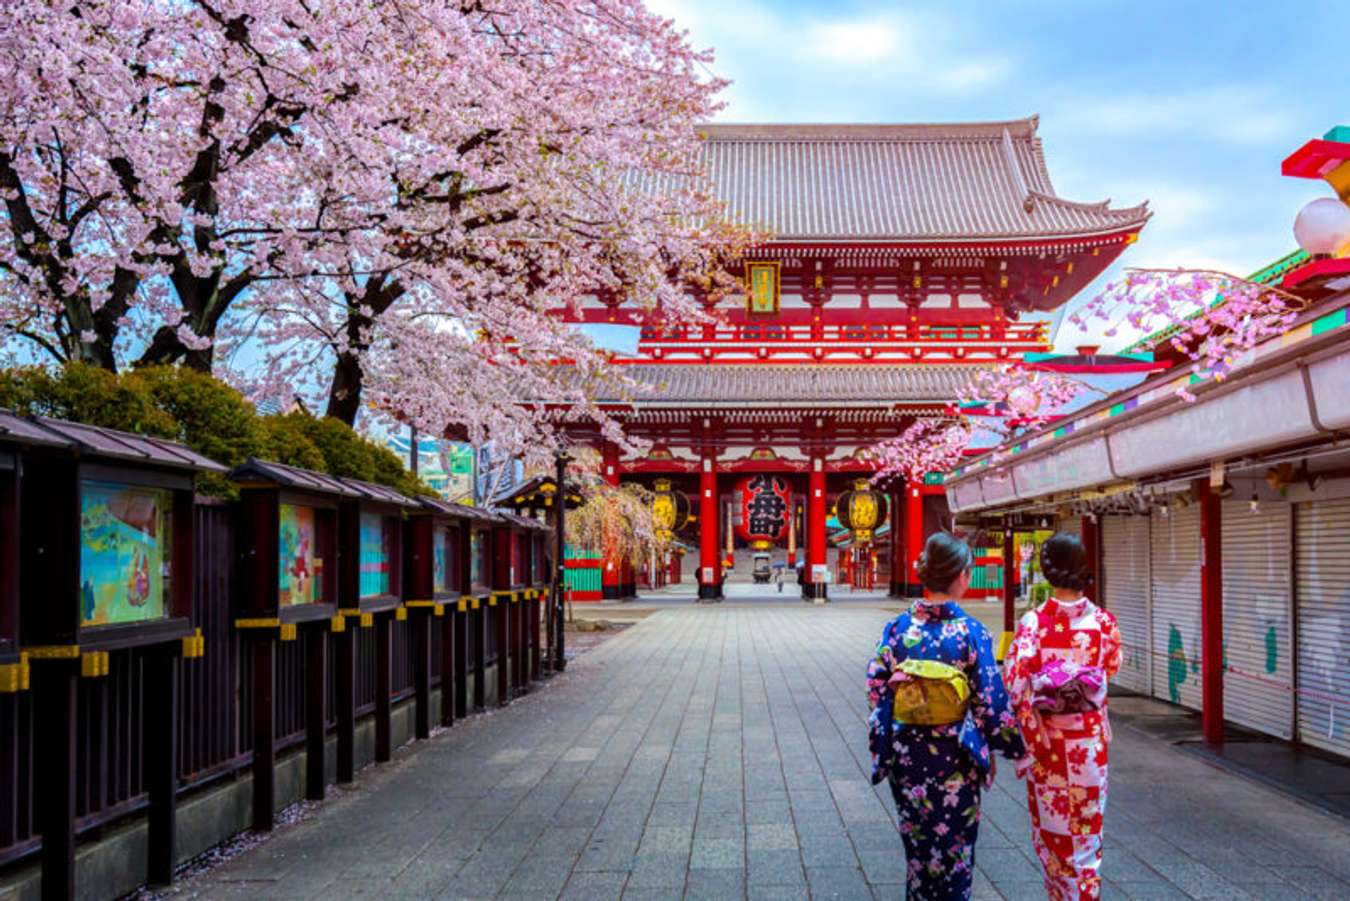 วัดอาซากุสะ หรือ วัดเซนโซจิ (Sensoji Temple) - เที่ยวญี่ปุ่น